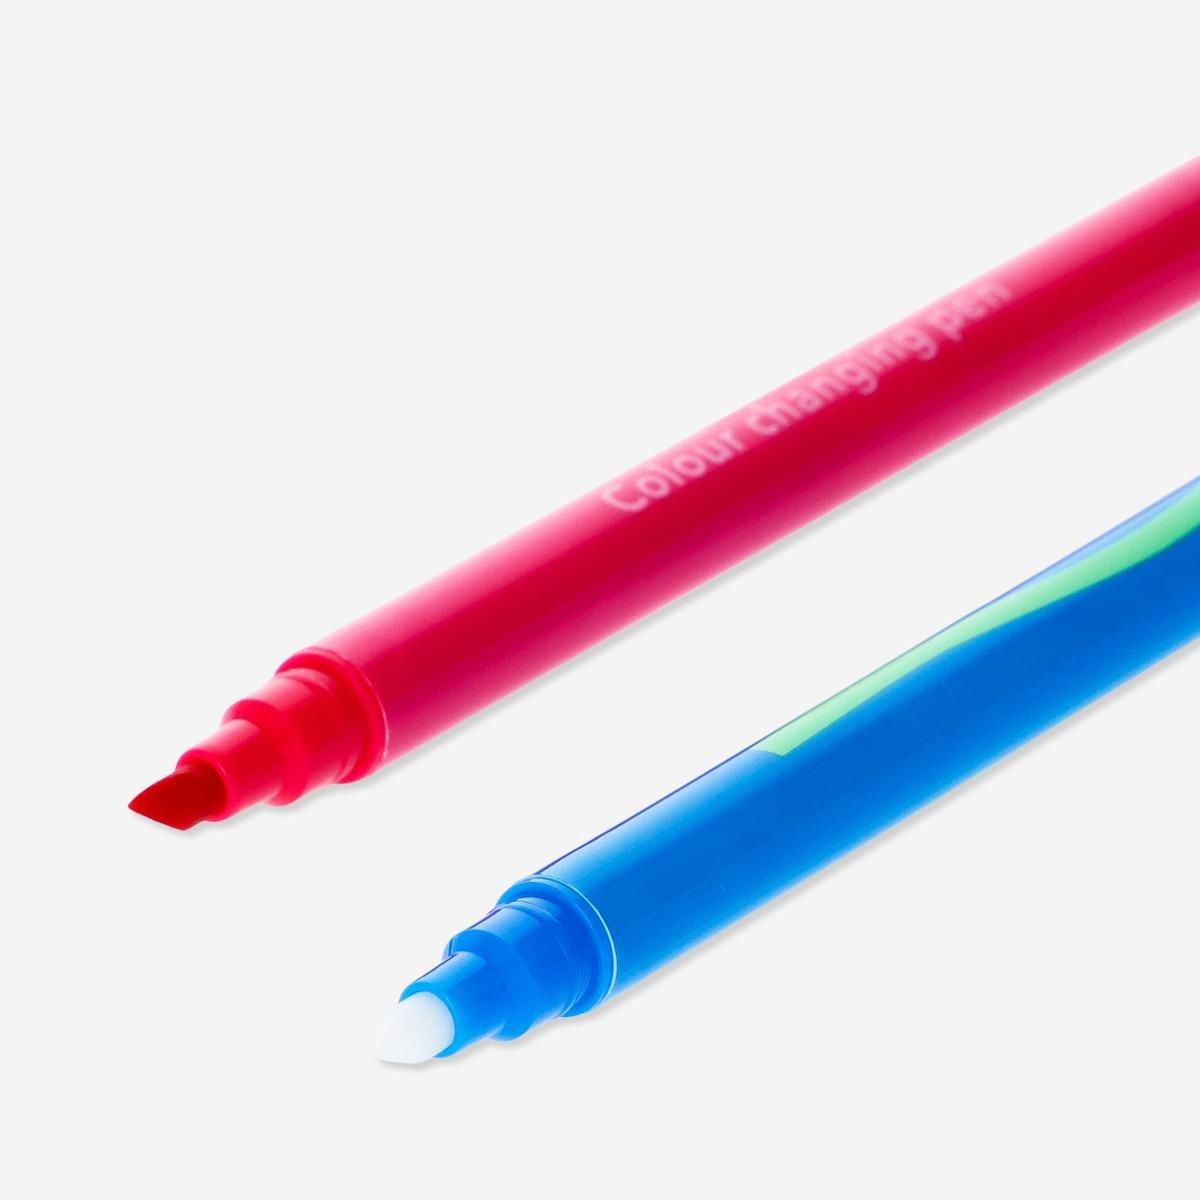 Multicolour magical pens. 12 pcs